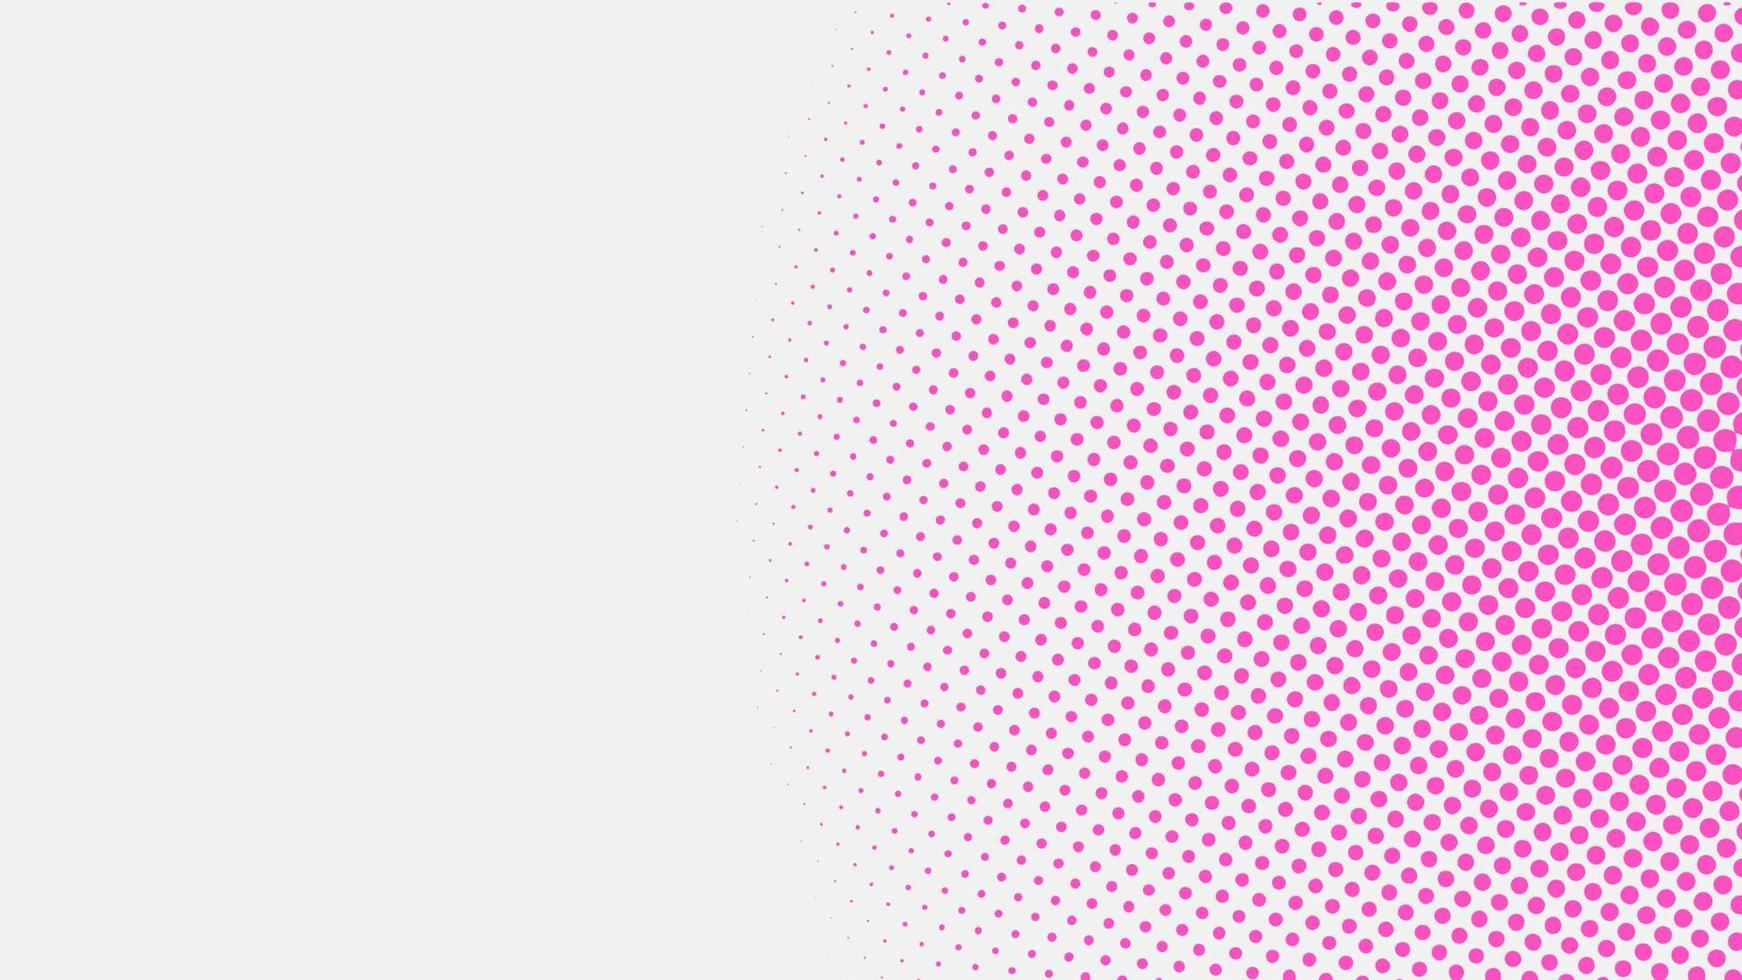 kleurrijke roze halftone achtergrond ontwerpsjabloon, popart, abstracte stippen patroon illustratie, vintage textuur element, roze witte gradatie, afgeronde vorm, polka-dotted, polkadot, vector eps 10